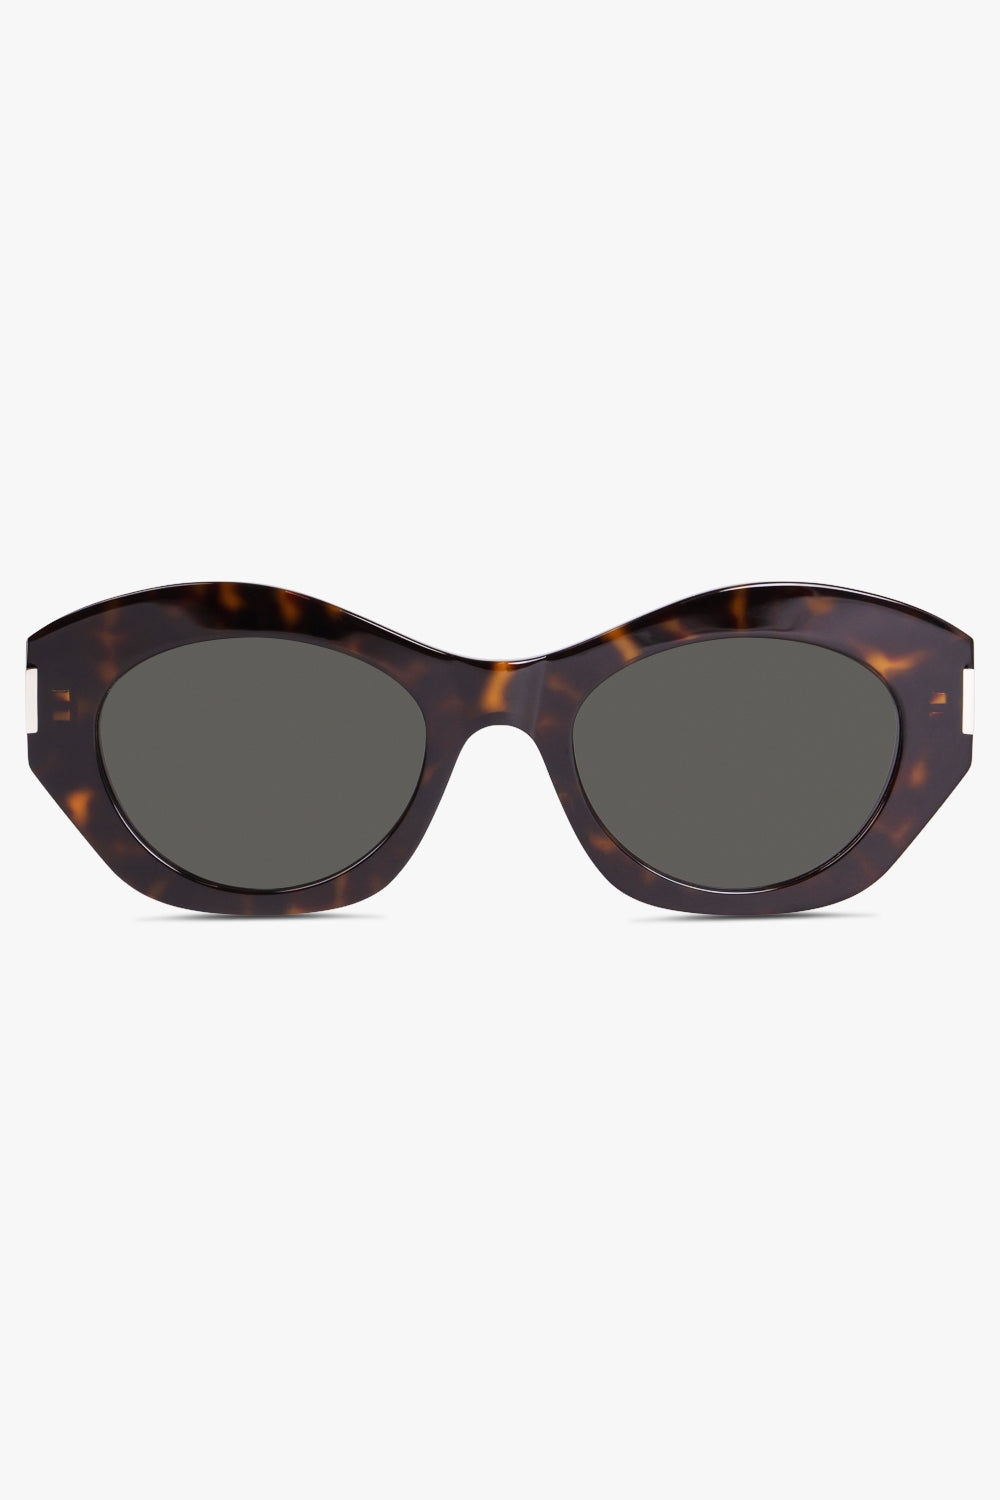 SAINT LAURENT ACCS Brown 639 Sunglasses | Dark Havana/Grey